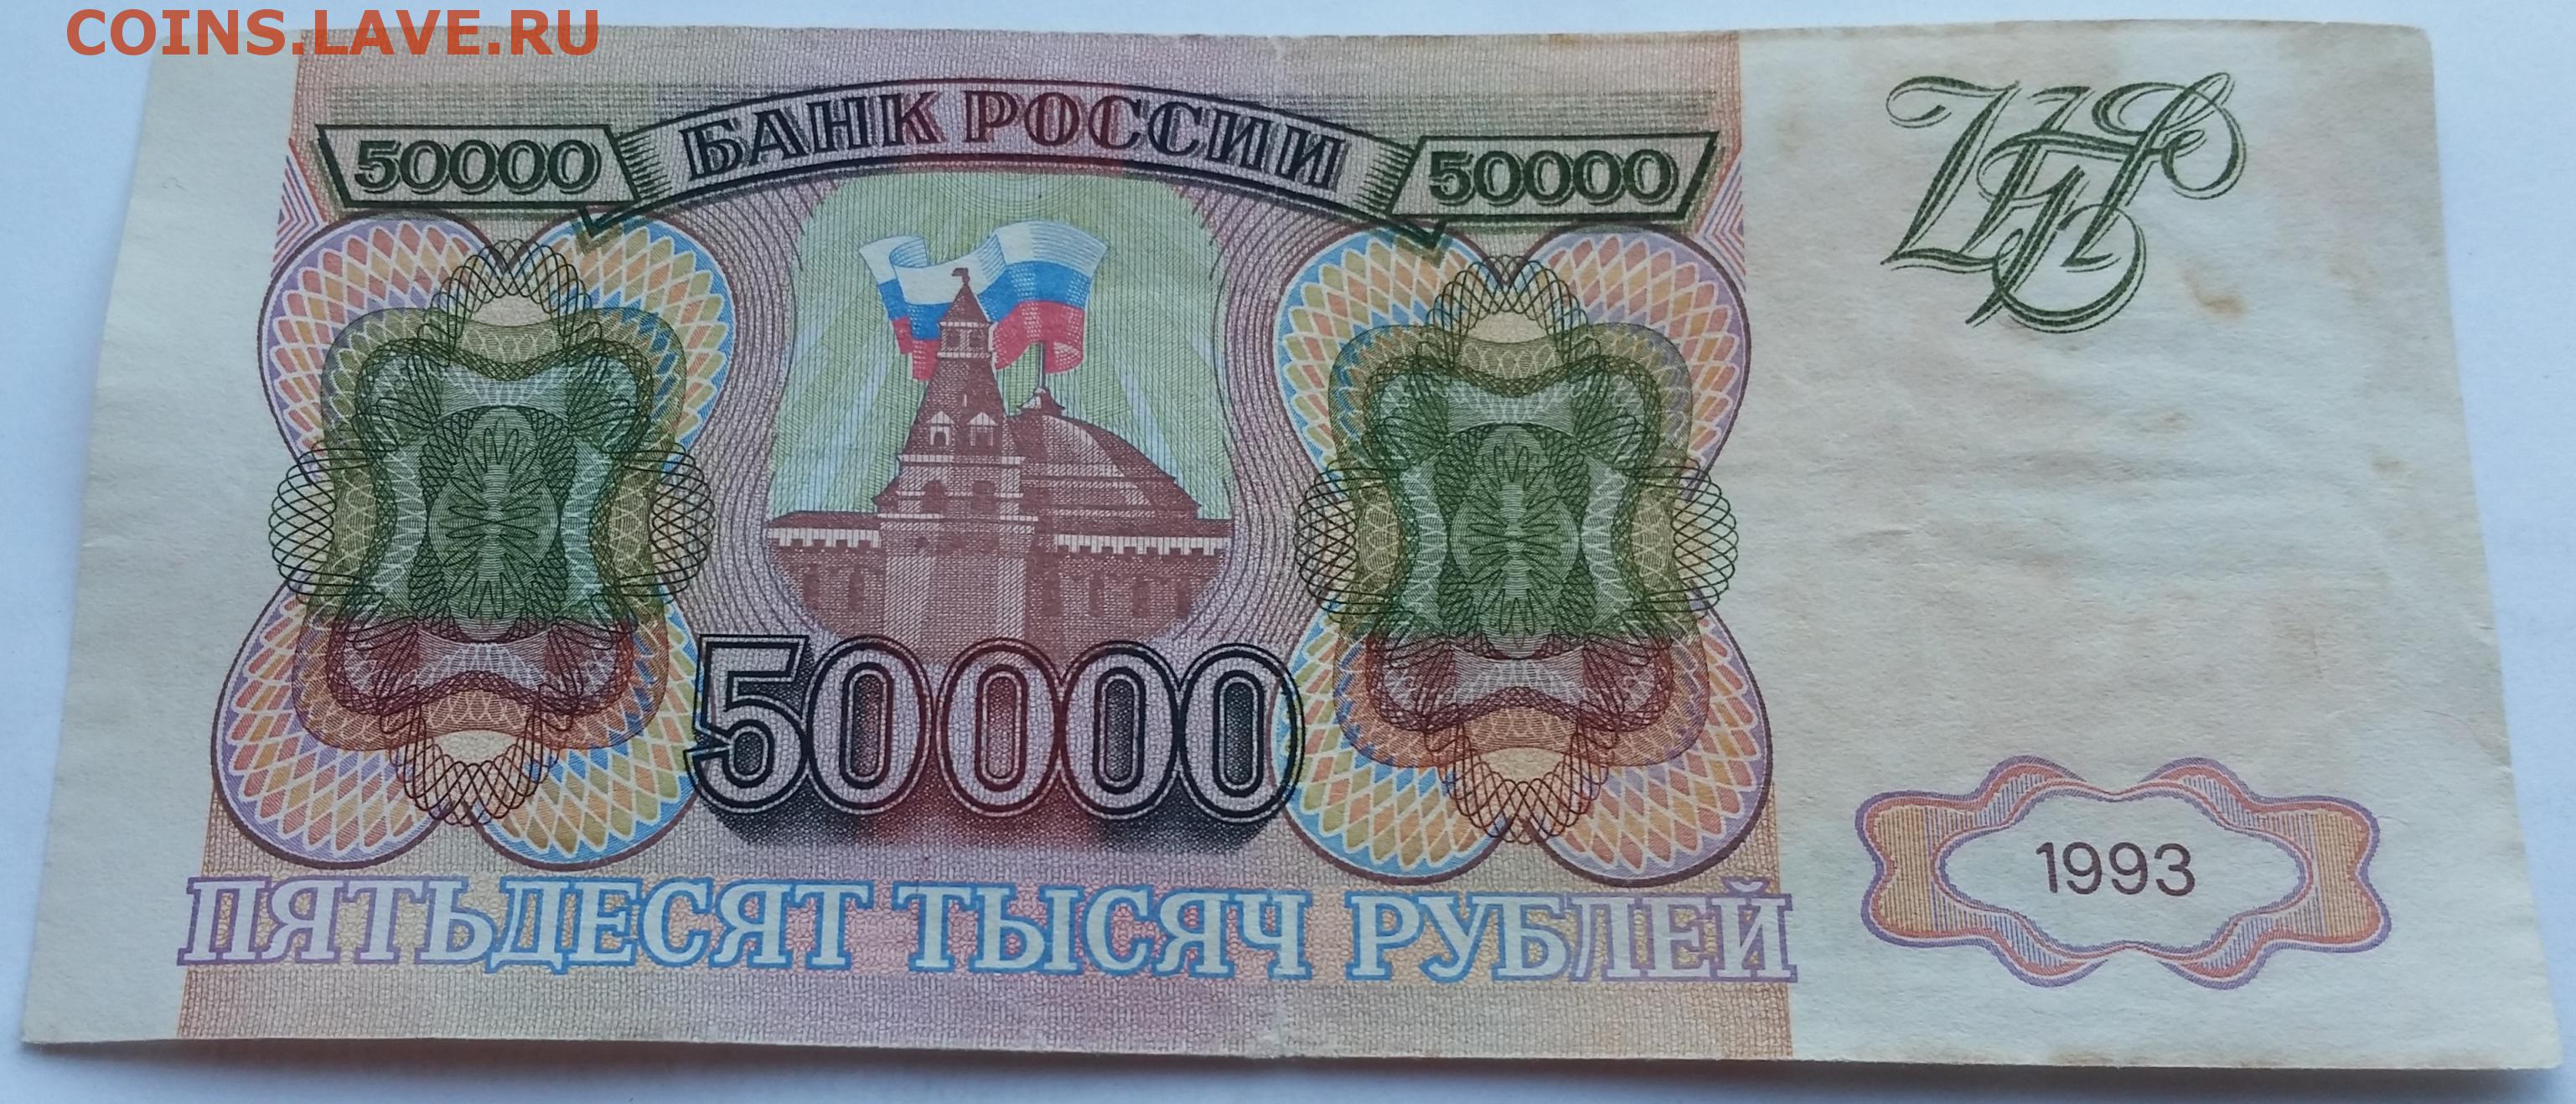 8 т рублей. 50000 Рублей 1993. Купюра 50000 рублей 1993. Купюра 50000 рублей 1993 года. Банкнота 50000 рублей 1993.